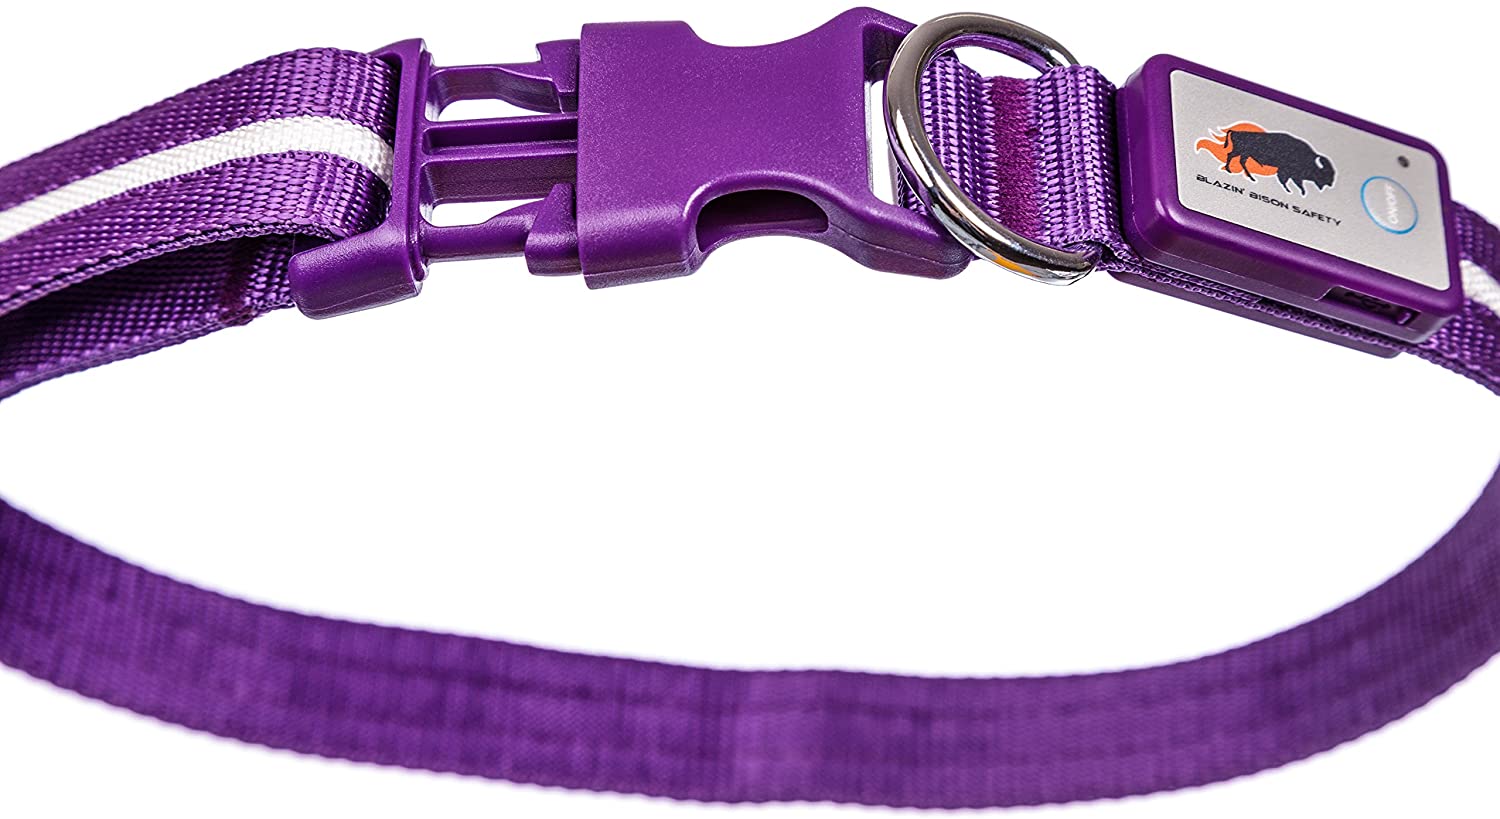  Blazin' Bison Seguridad LED Collar de perro - USB recargable con luz violeta medio intermitente resistente al agua 